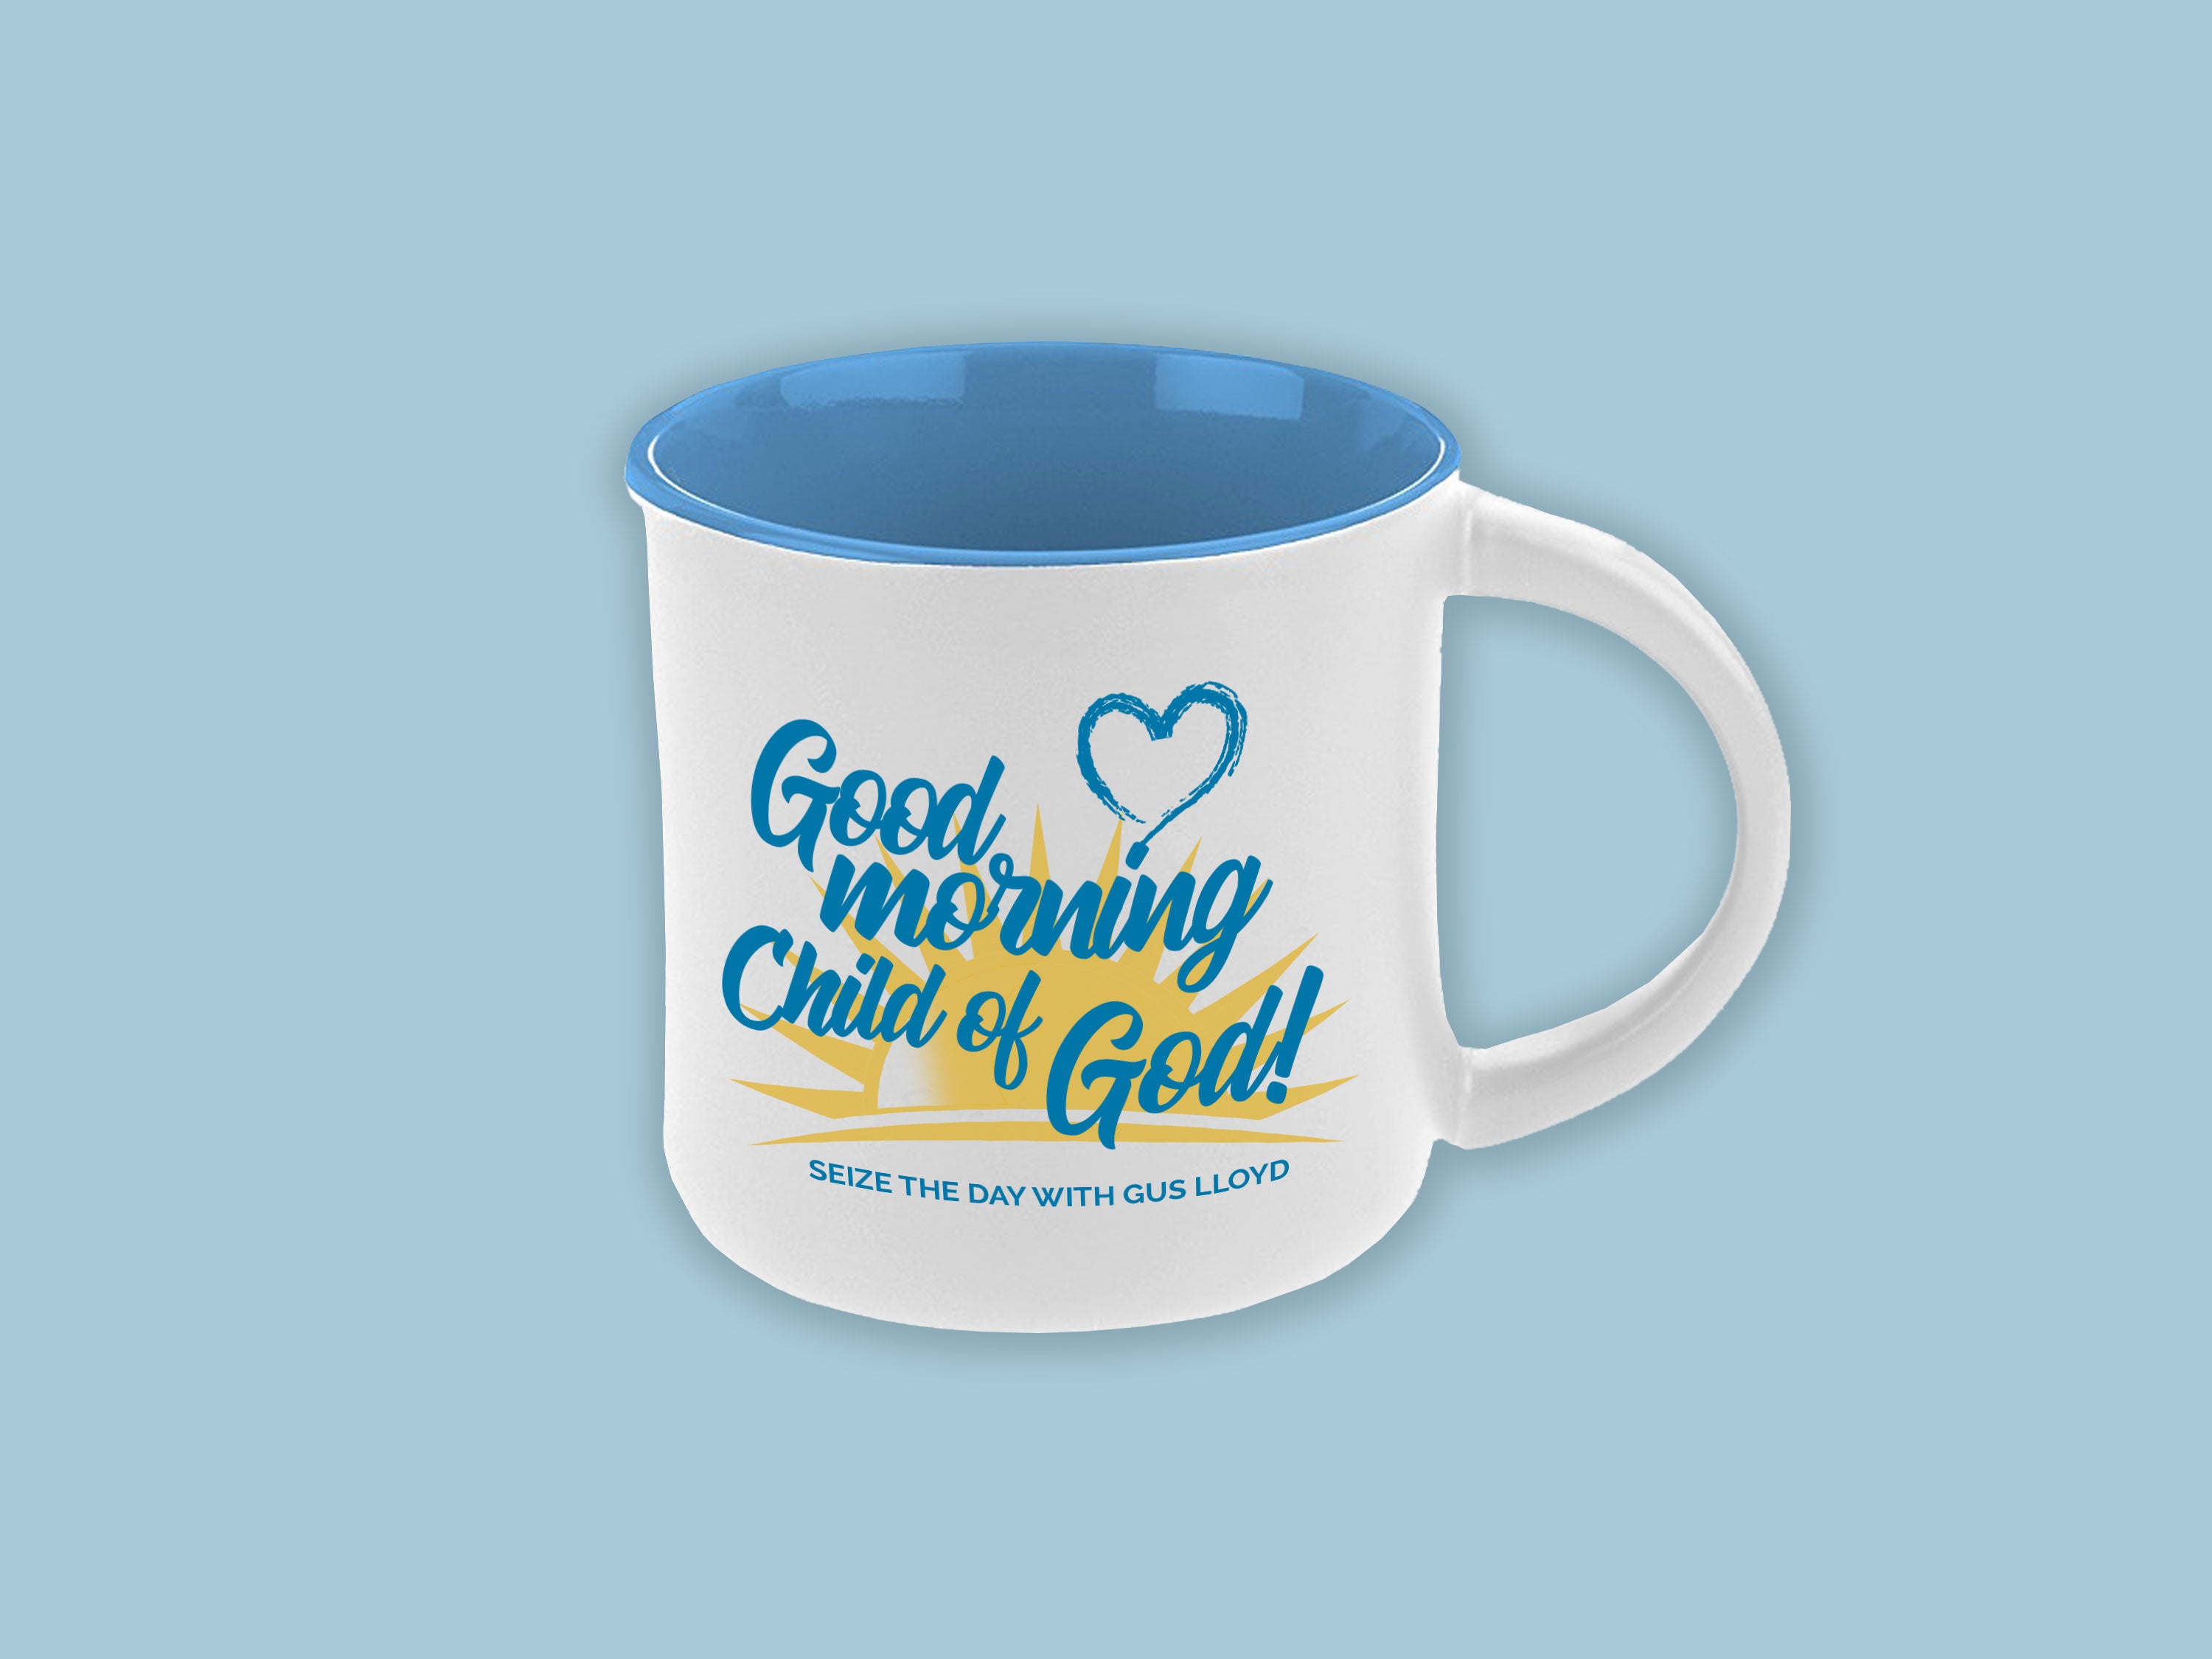 Good Morning Child of God Mug – Gus Lloyd